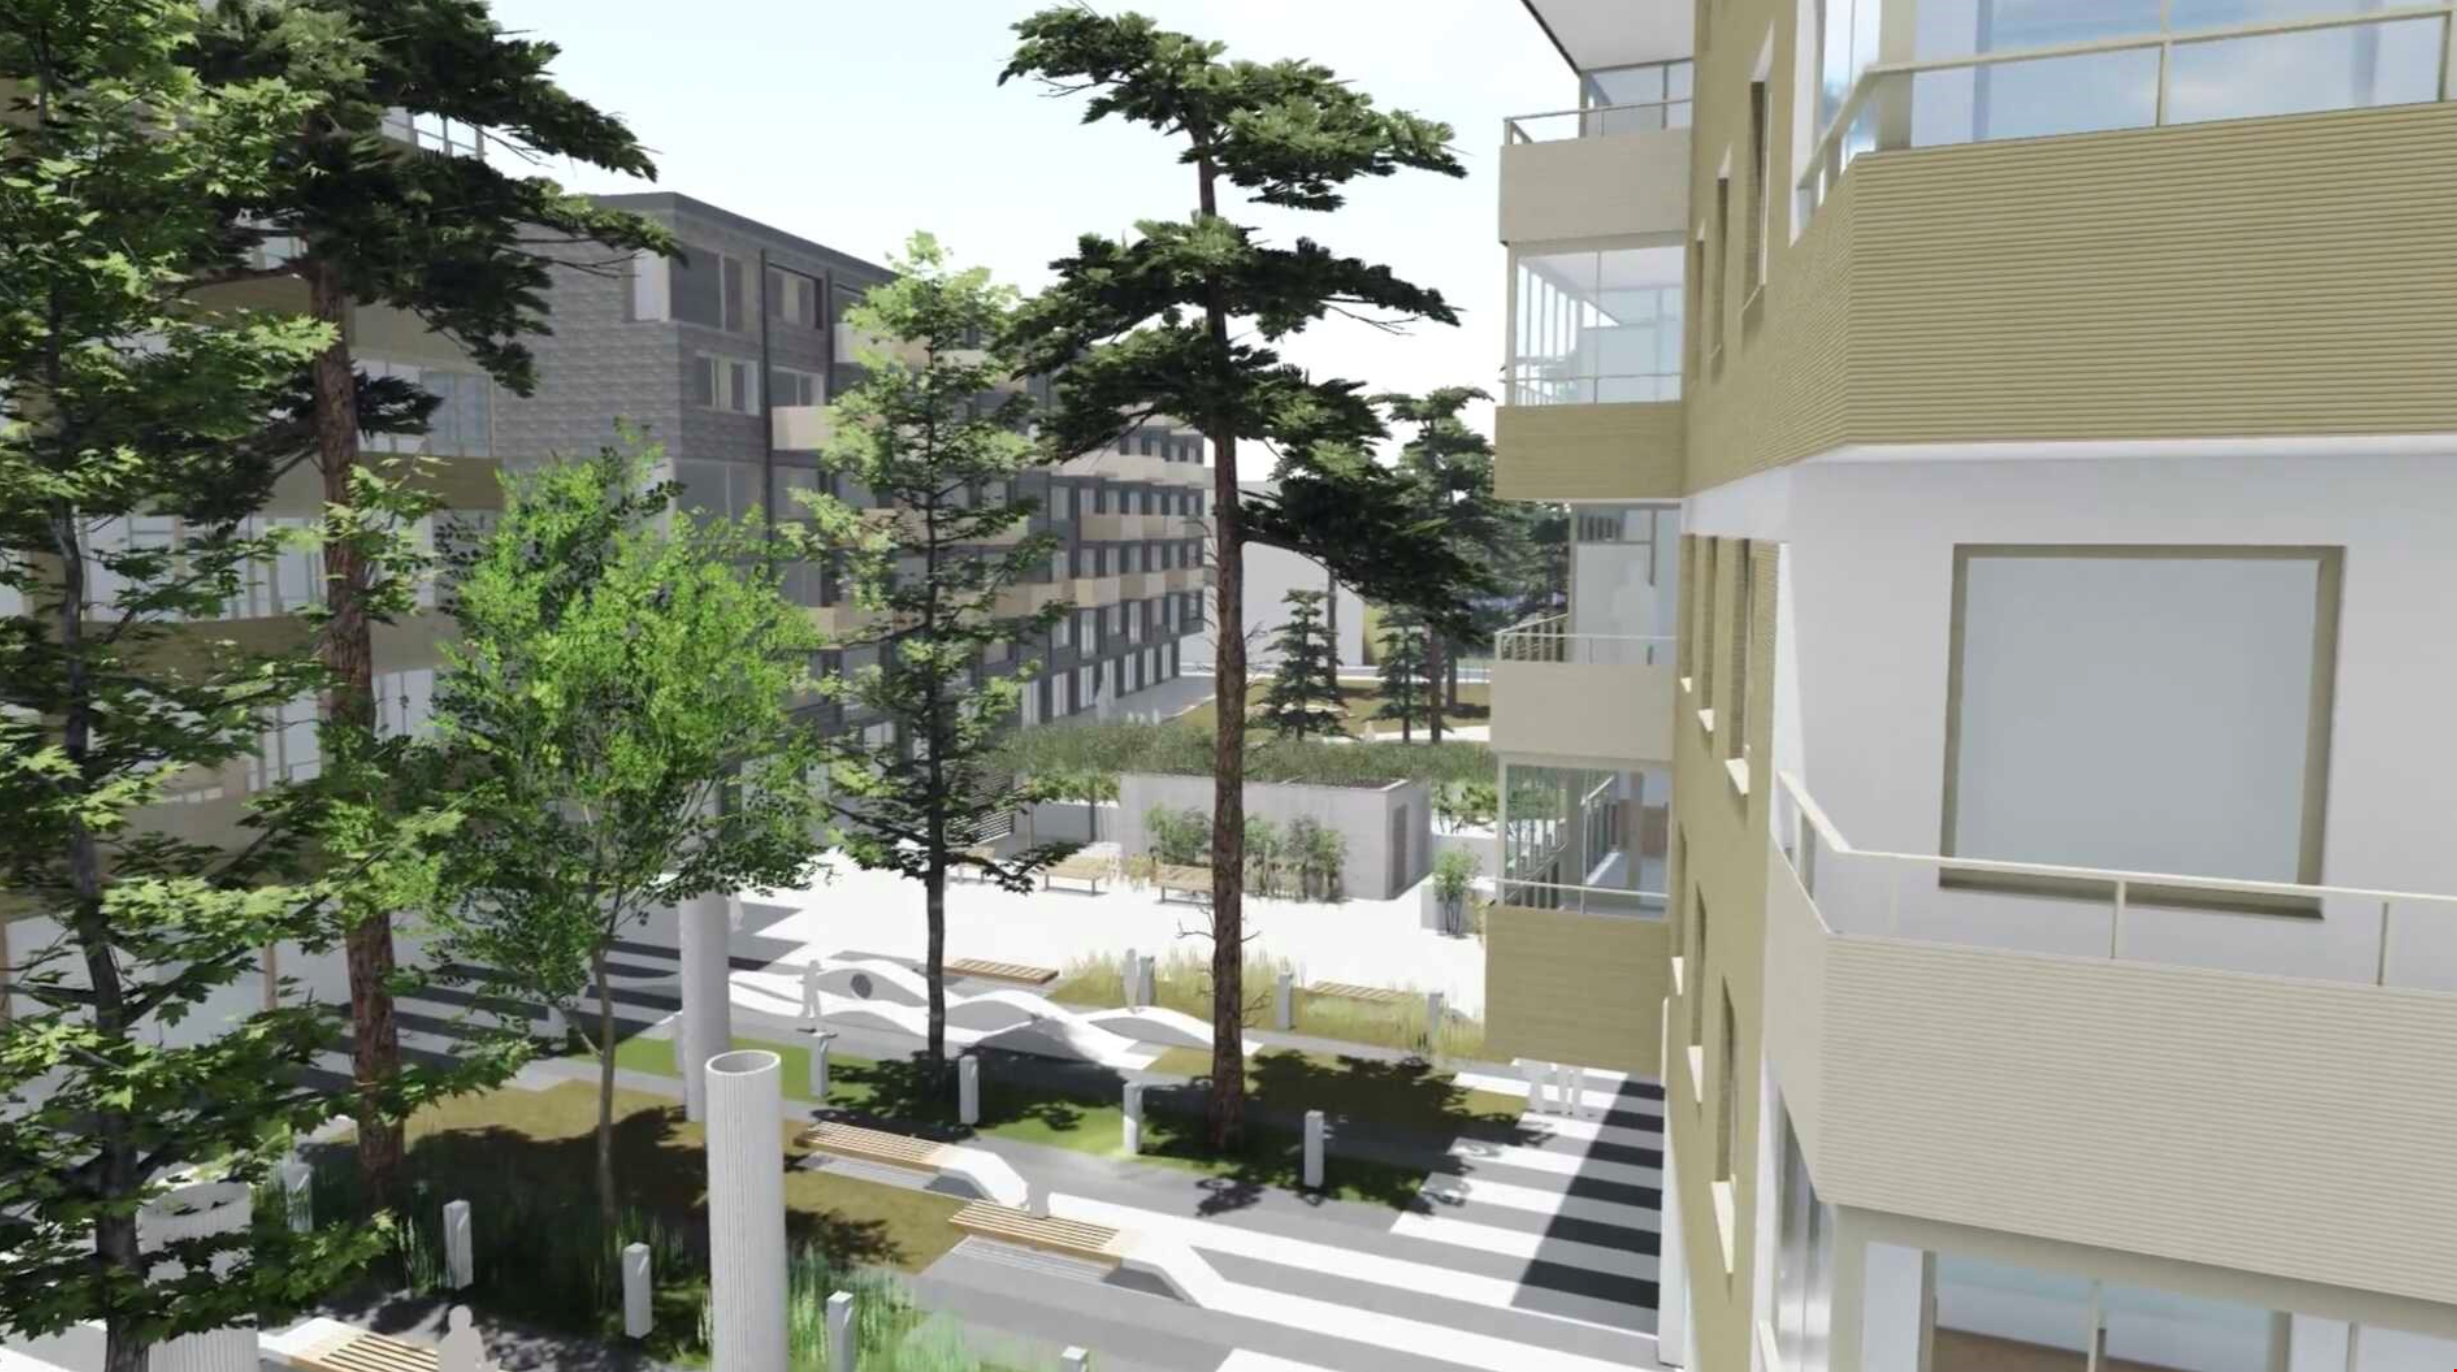 Riksbyggen planerar för 700 bostäder i kv Spårvagnshallarna i Helsingborg